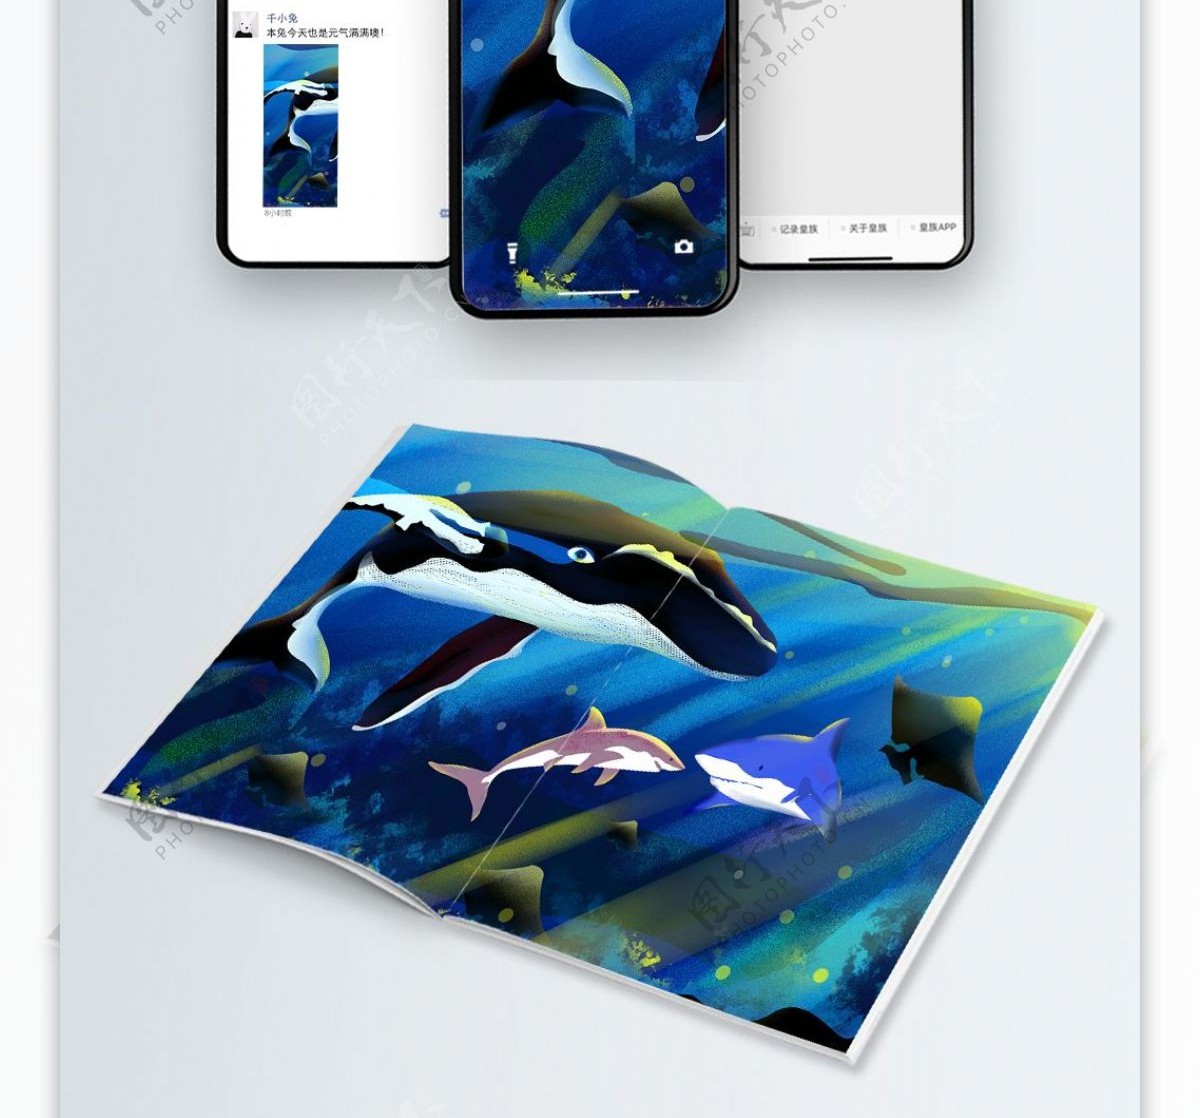 海洋生物鲸鱼与鲨鱼治愈系商业插画